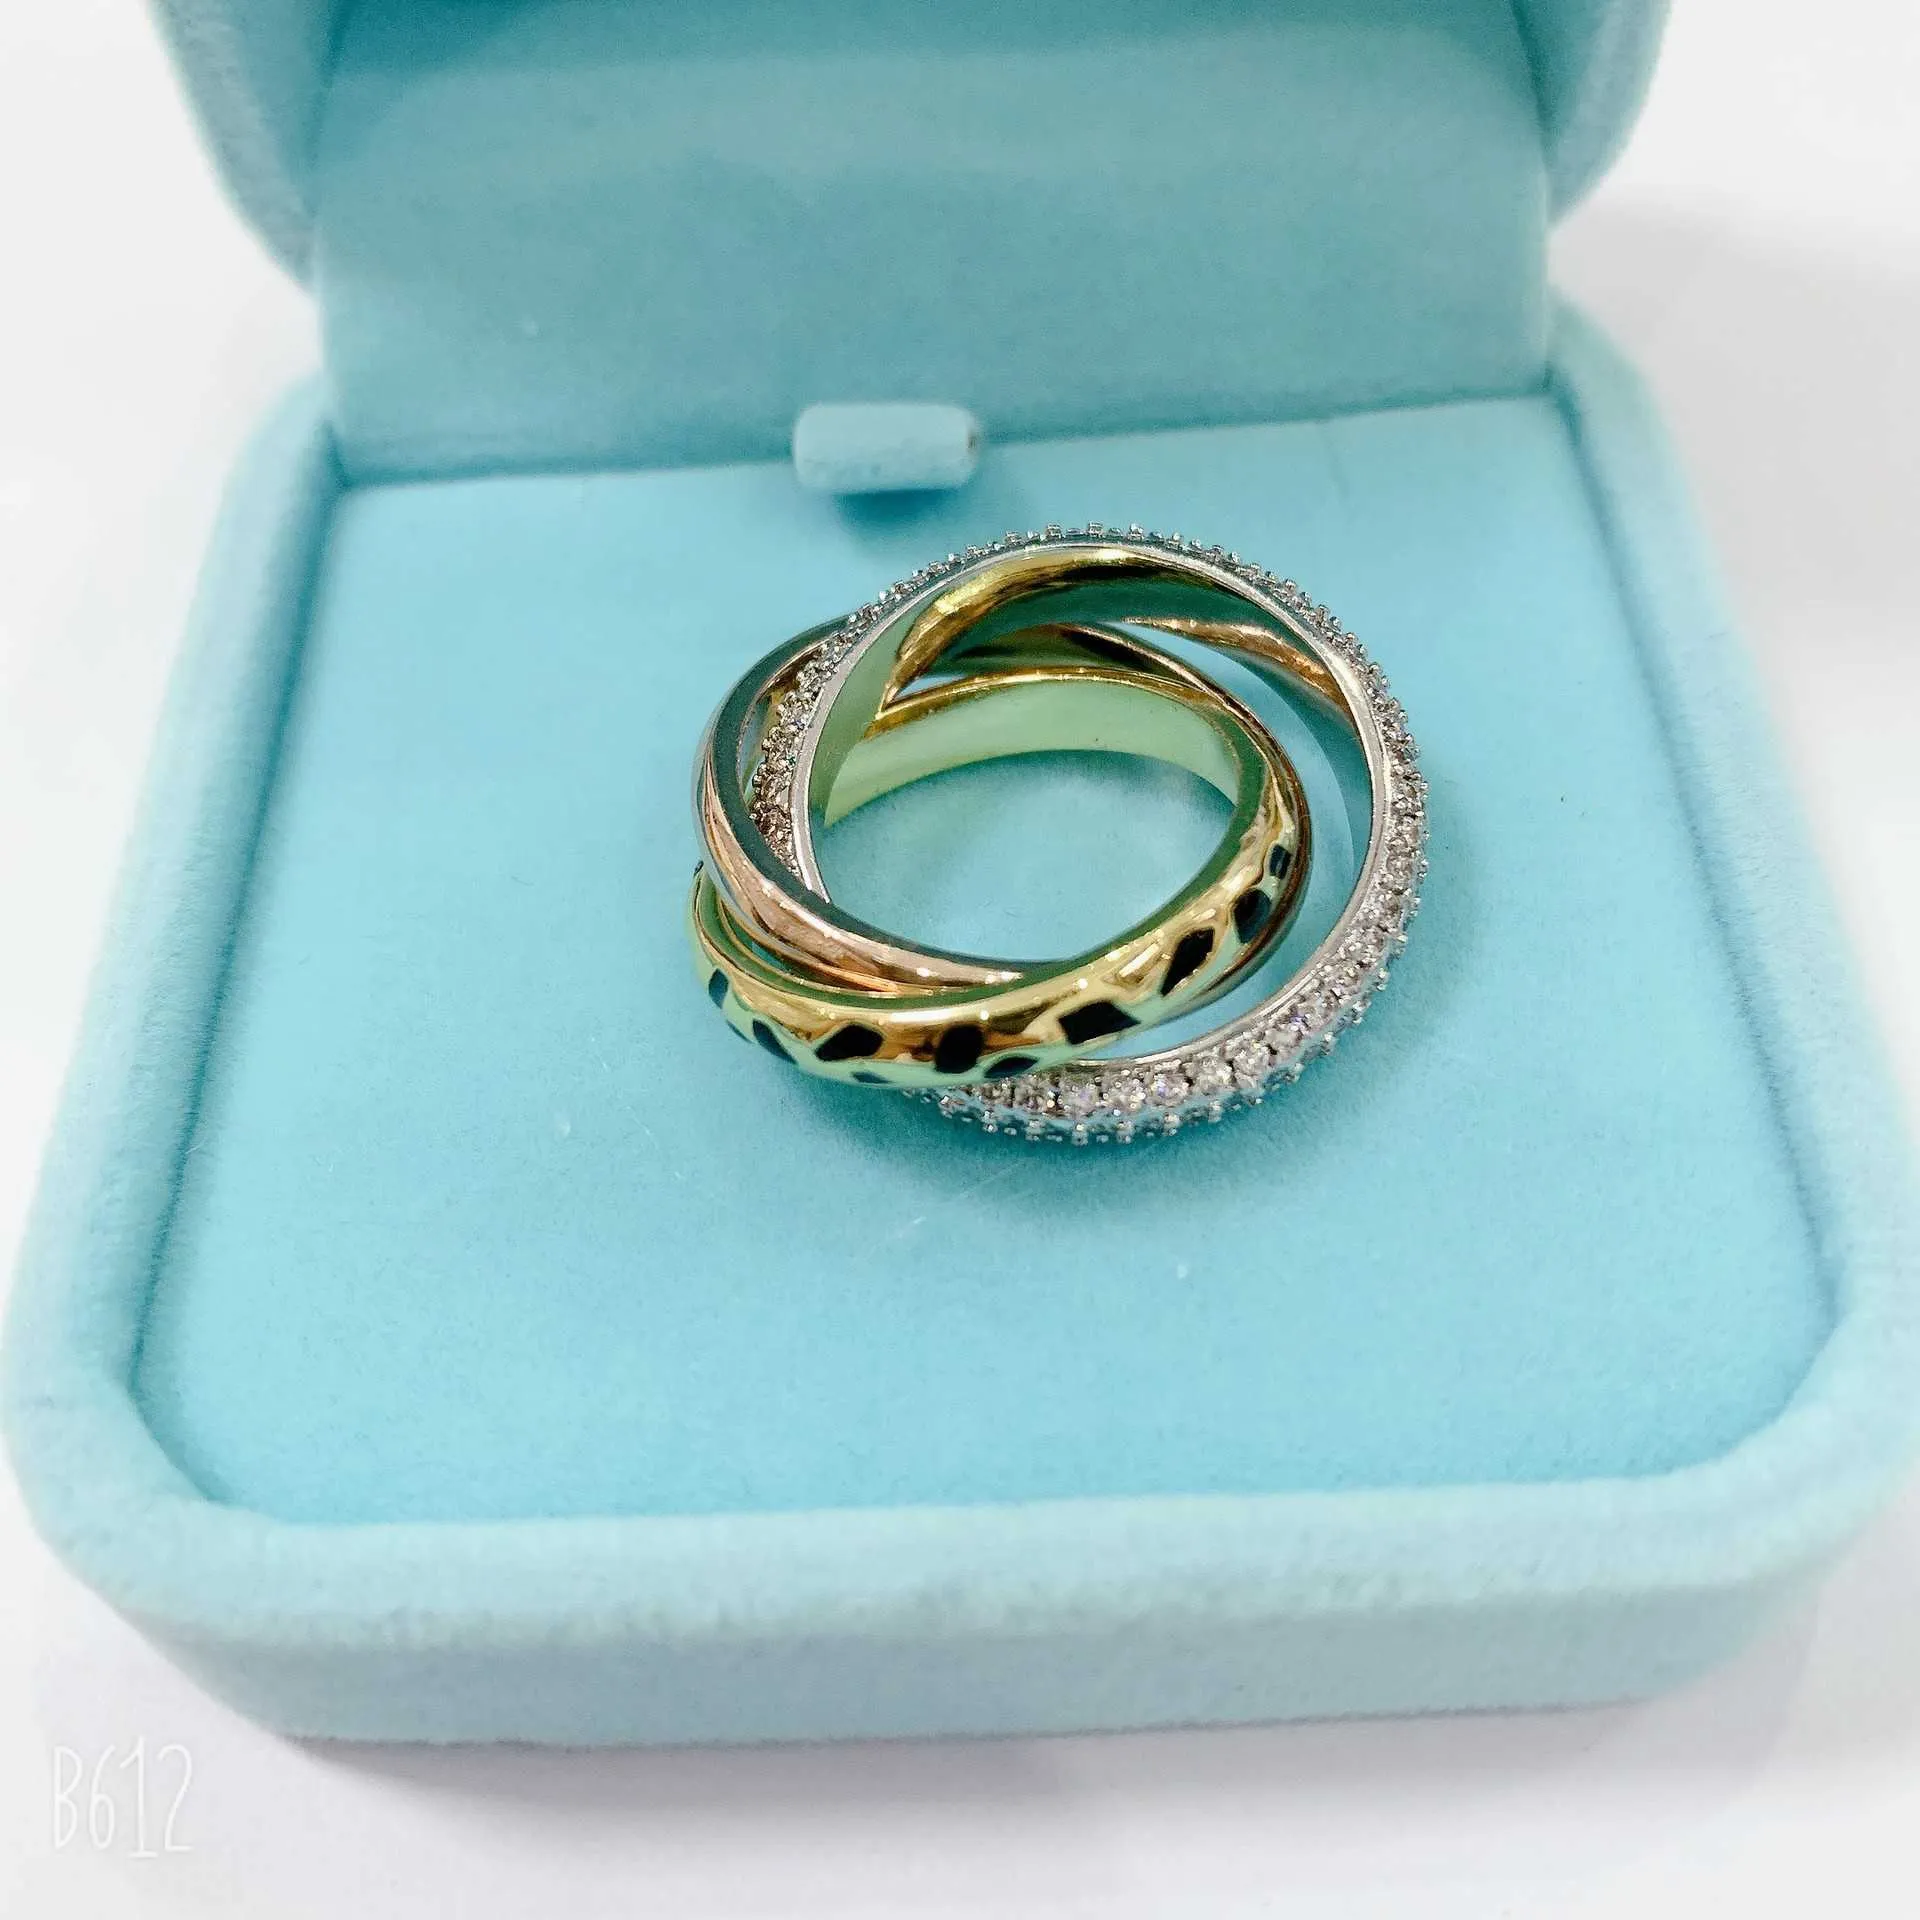 Популярный высококачественный дизайн мужской и женский рингейн, пьяный, легко сопоставить кольцо для модных модных пар парня, налоили с оригинальными кольцами Carrtiraa